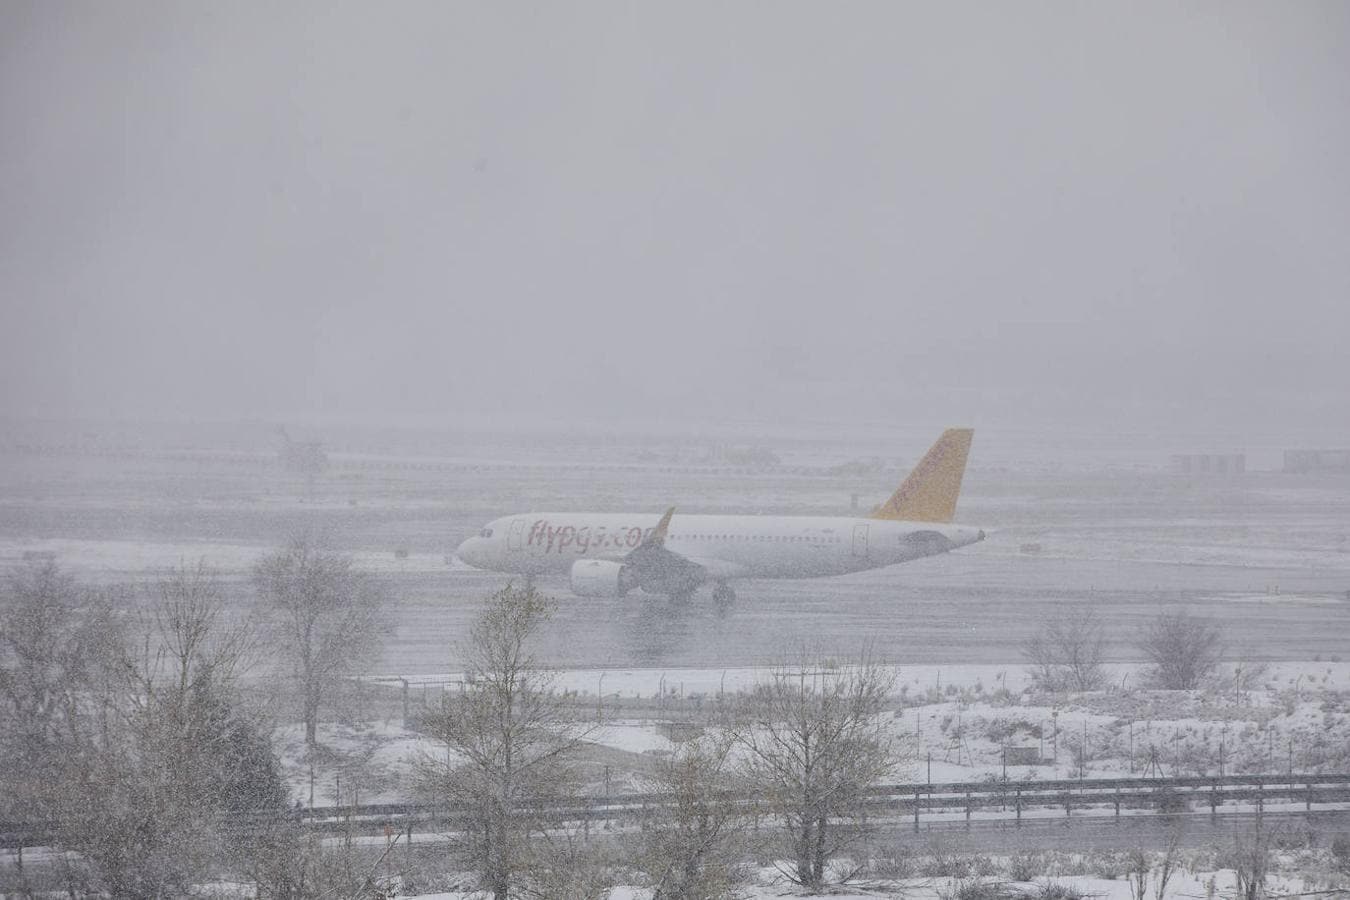 Barajas bajo la nieve. La nieve no se saltó en aeropuerto, que tuvo en primera instancia que cancelar algunos vuelos.